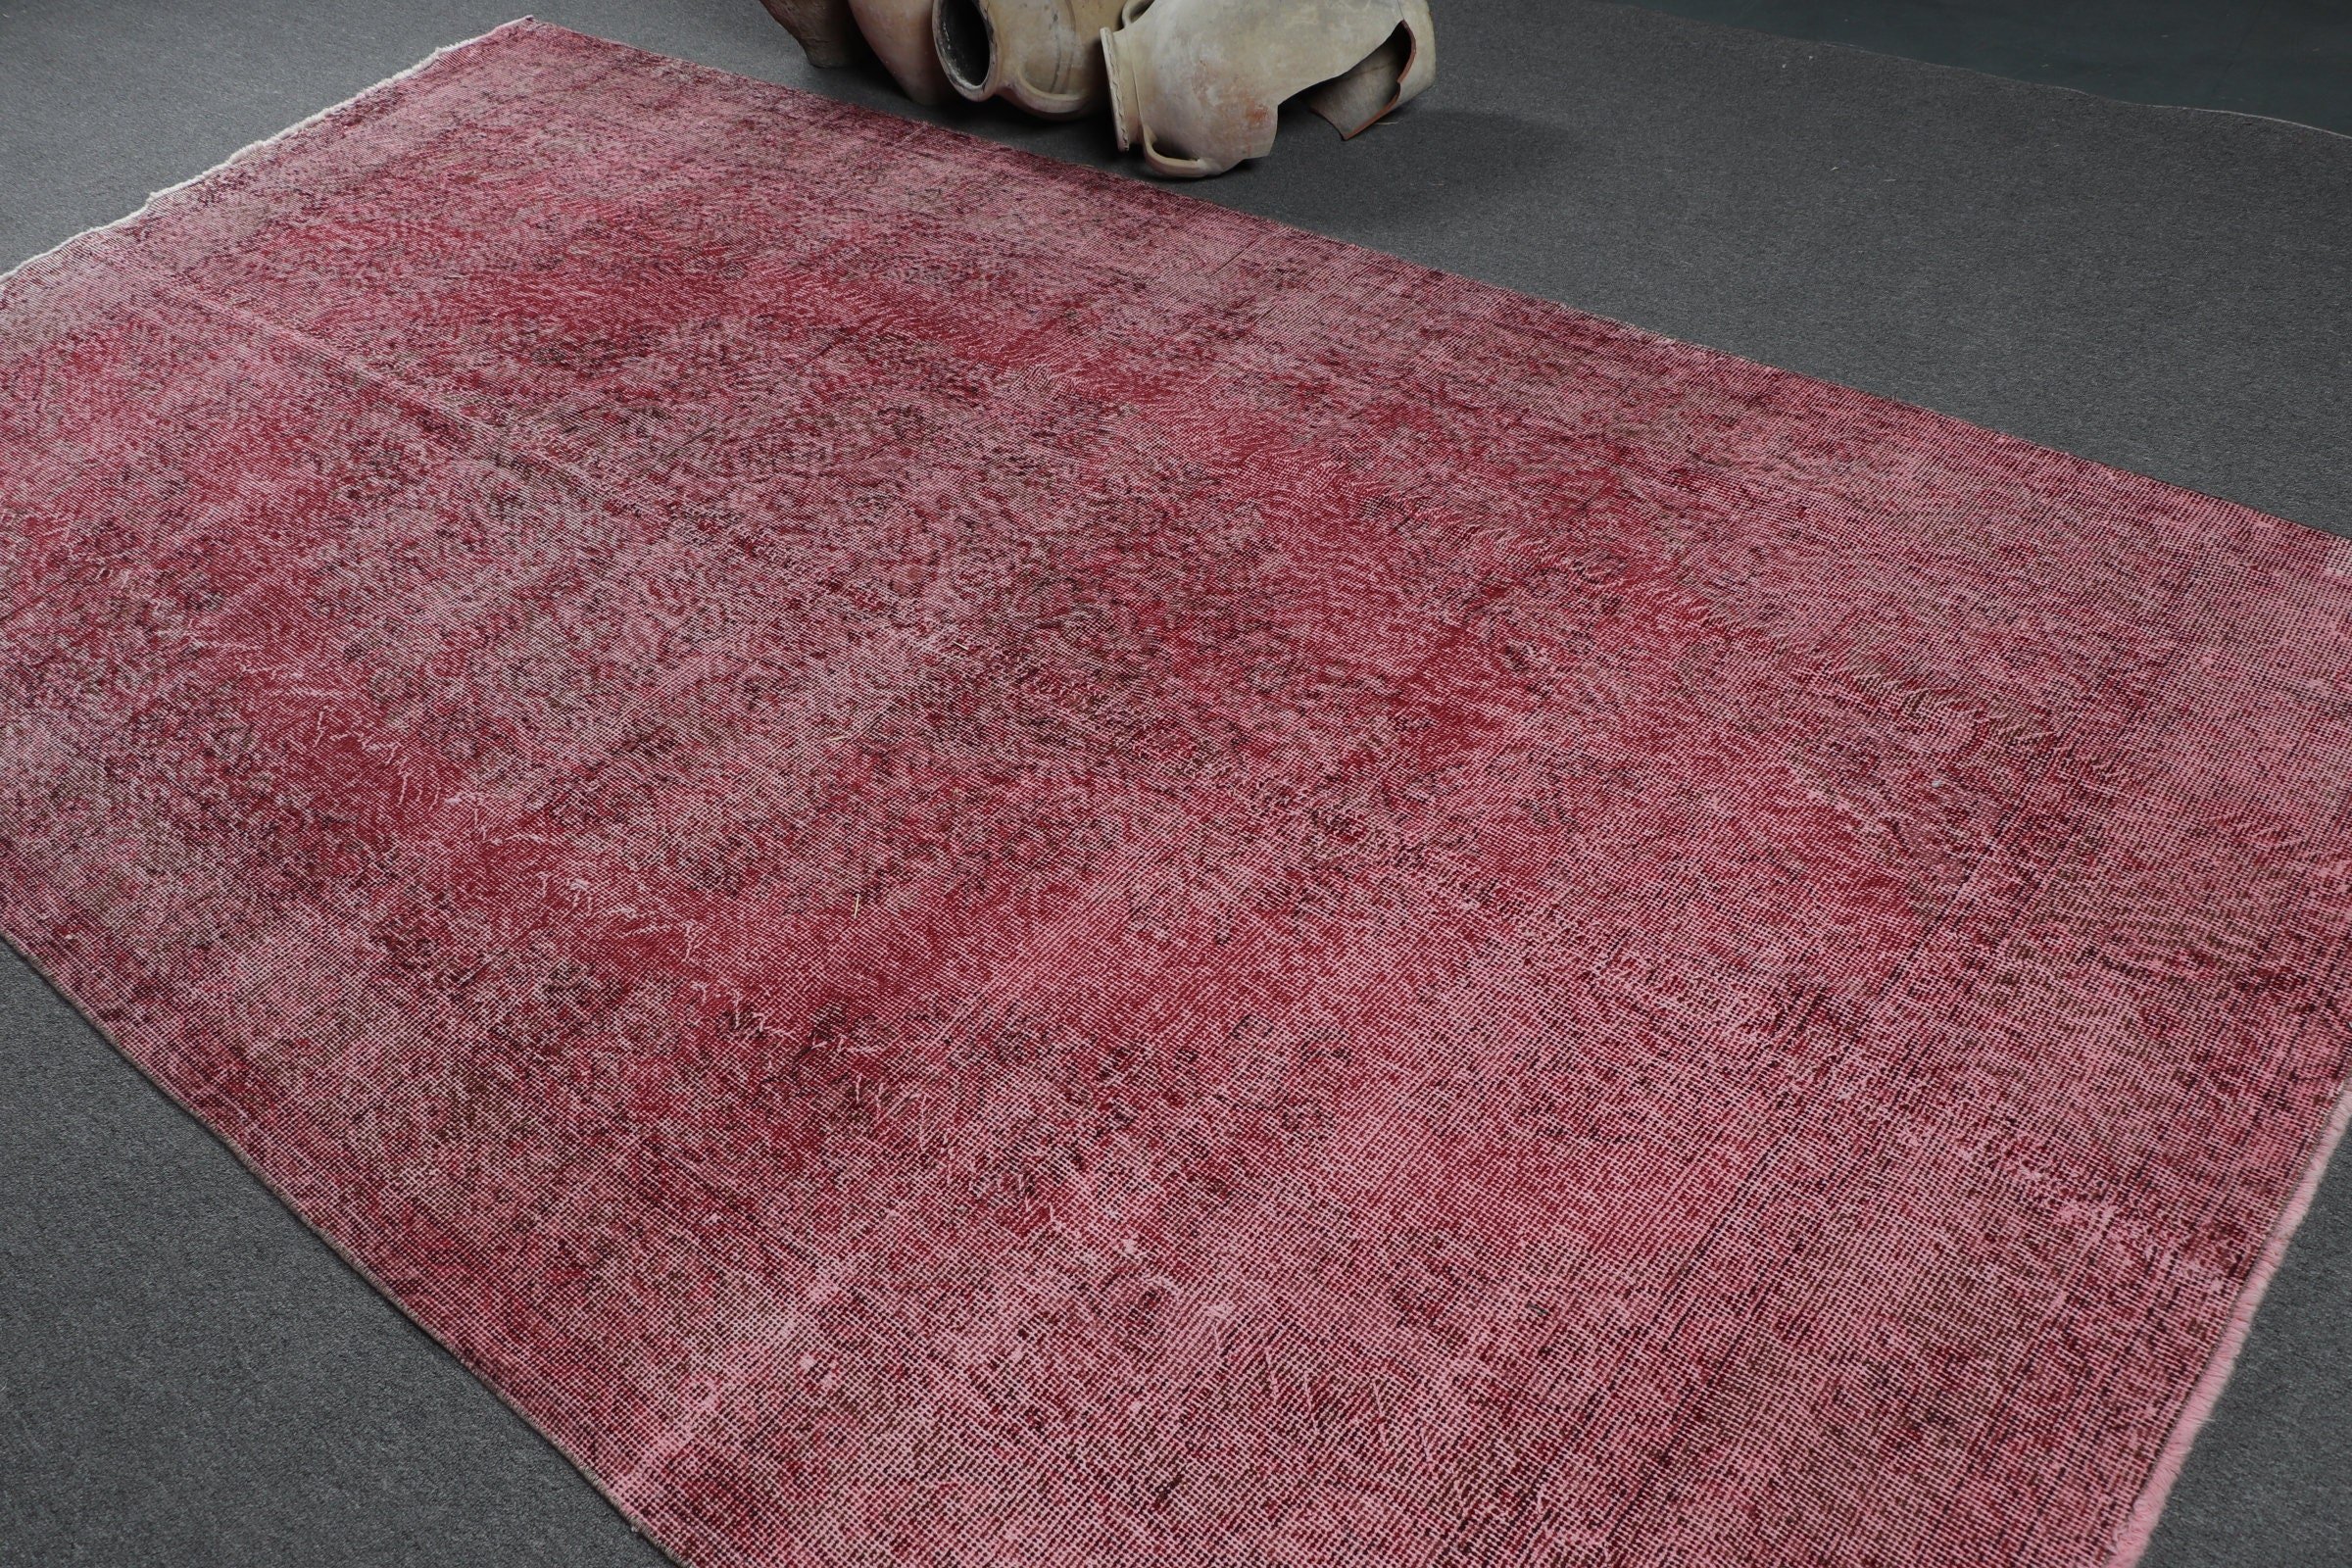 Vintage Rug, Pink Floor Rugs, Turkish Rug, Living Room Rug, Wool Rugs, 5.7x10.9 ft Large Rug, Cool Rug, Rugs for Living Room, Bedroom Rug